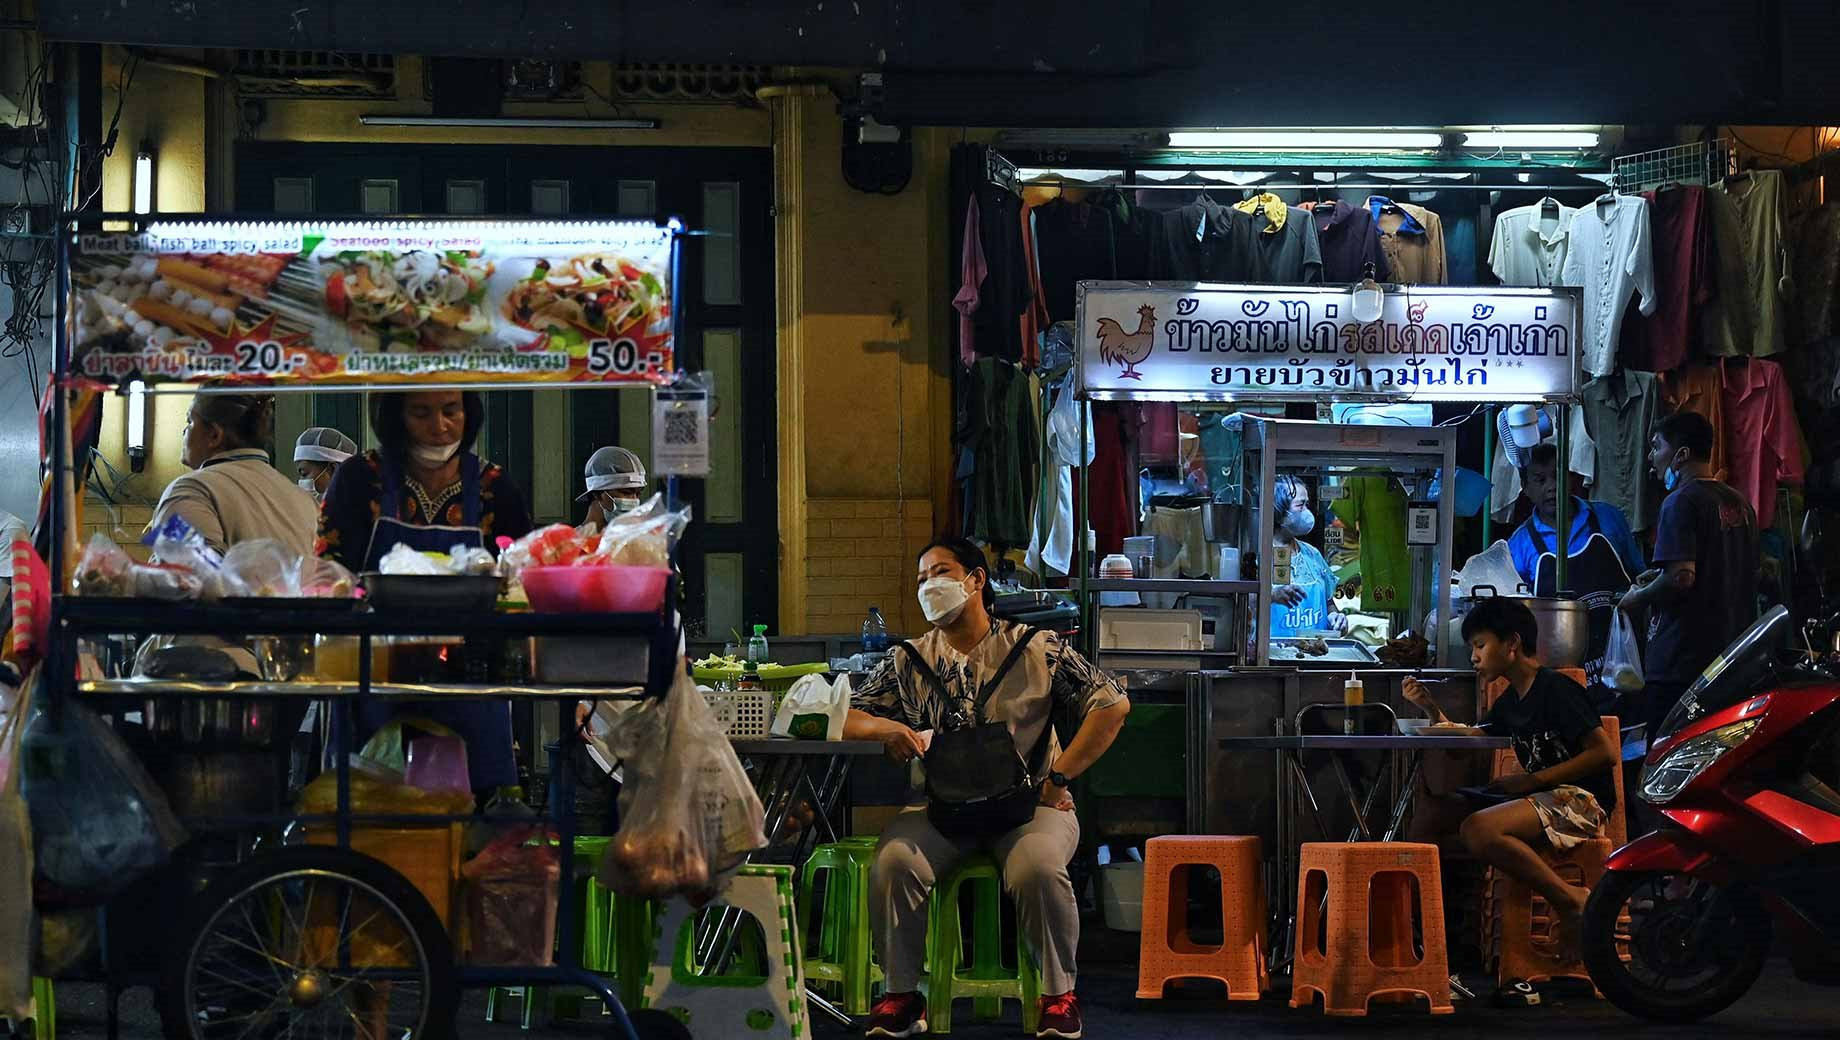 Kinh tế Thái Lan bị ví là 'con hổ chưa bao giờ gầm', kém hơn Việt Nam ở nhiều mảng - Ảnh 2.